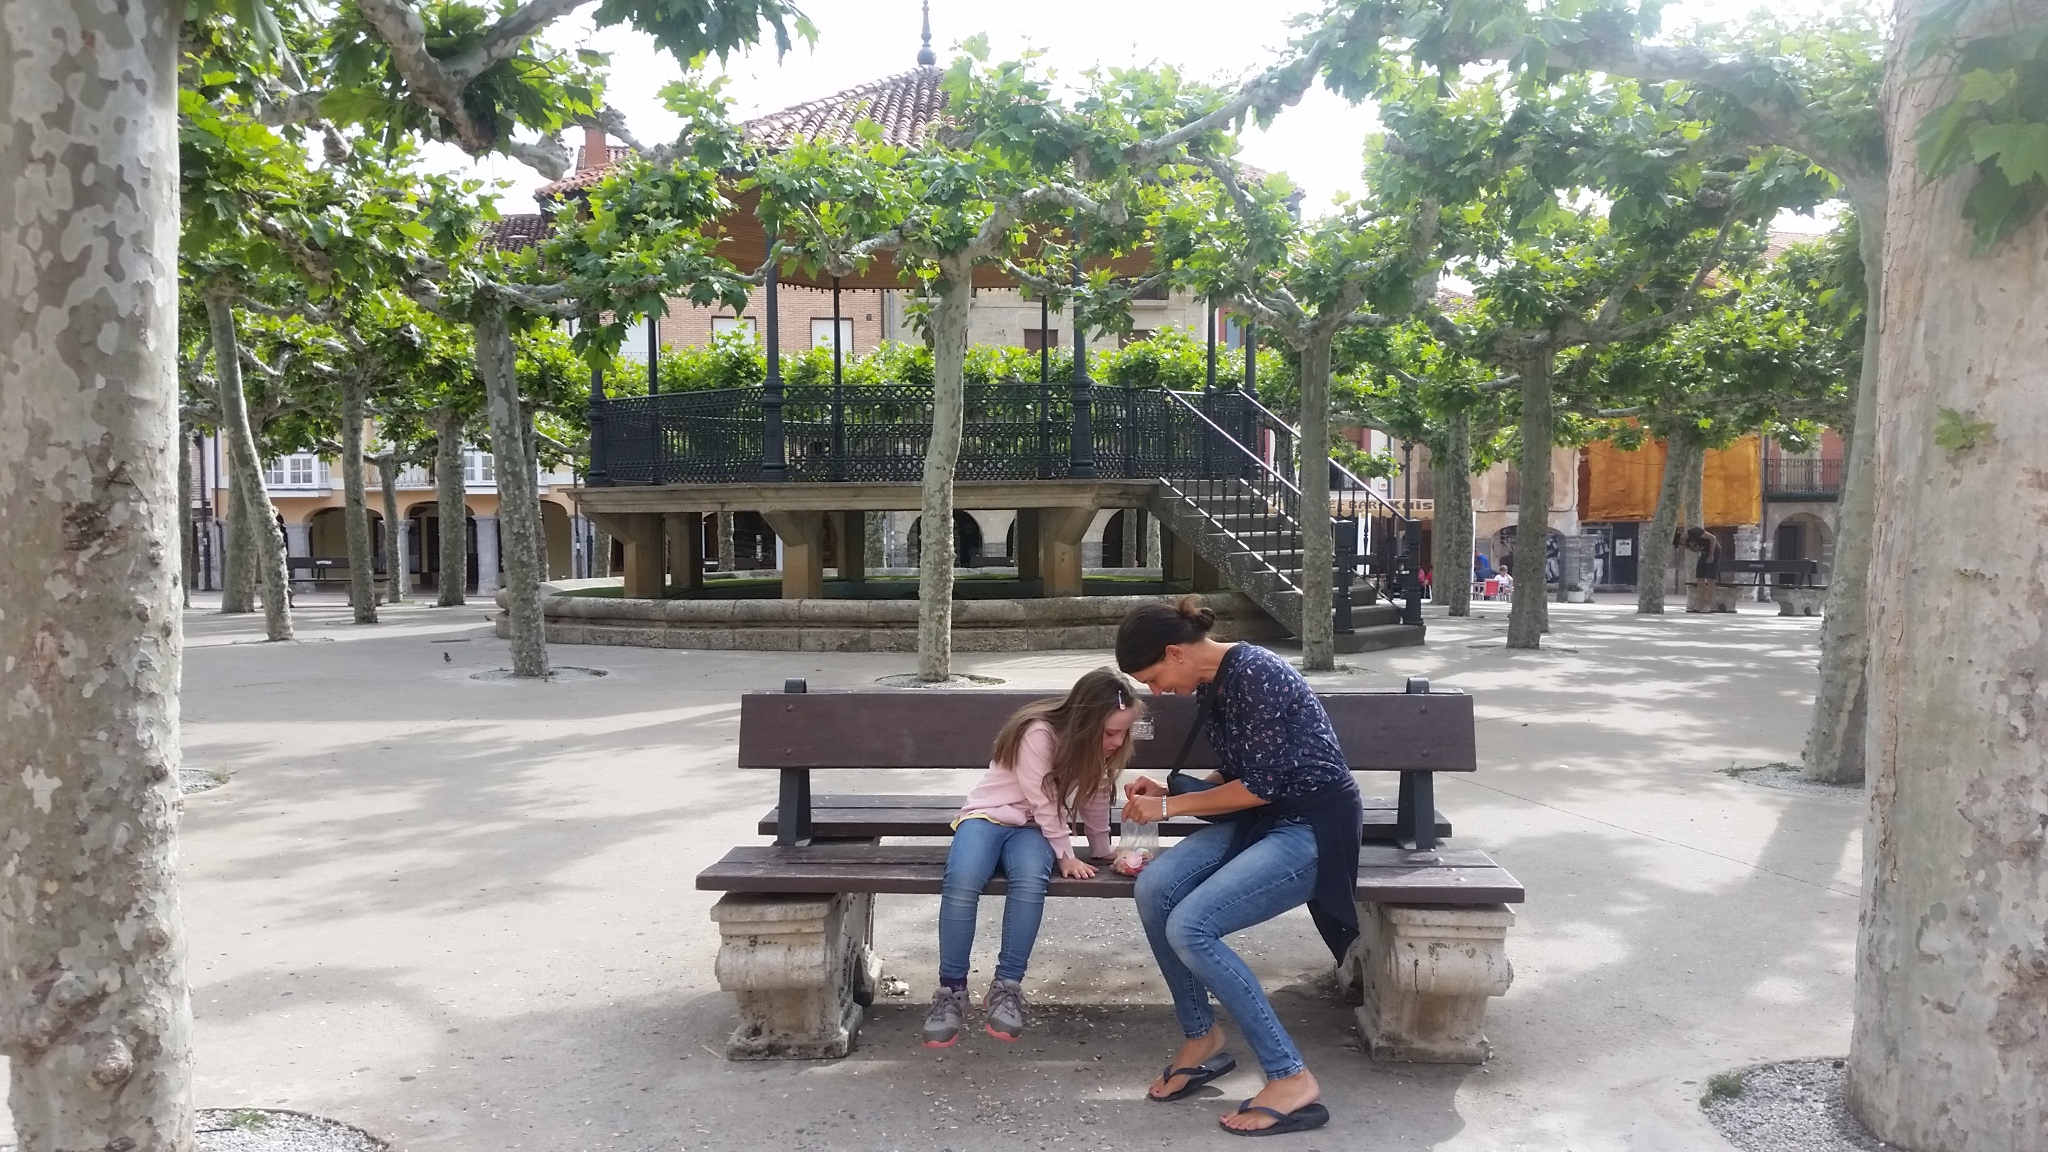 Gummibärchen am Plaza Major in Belorado